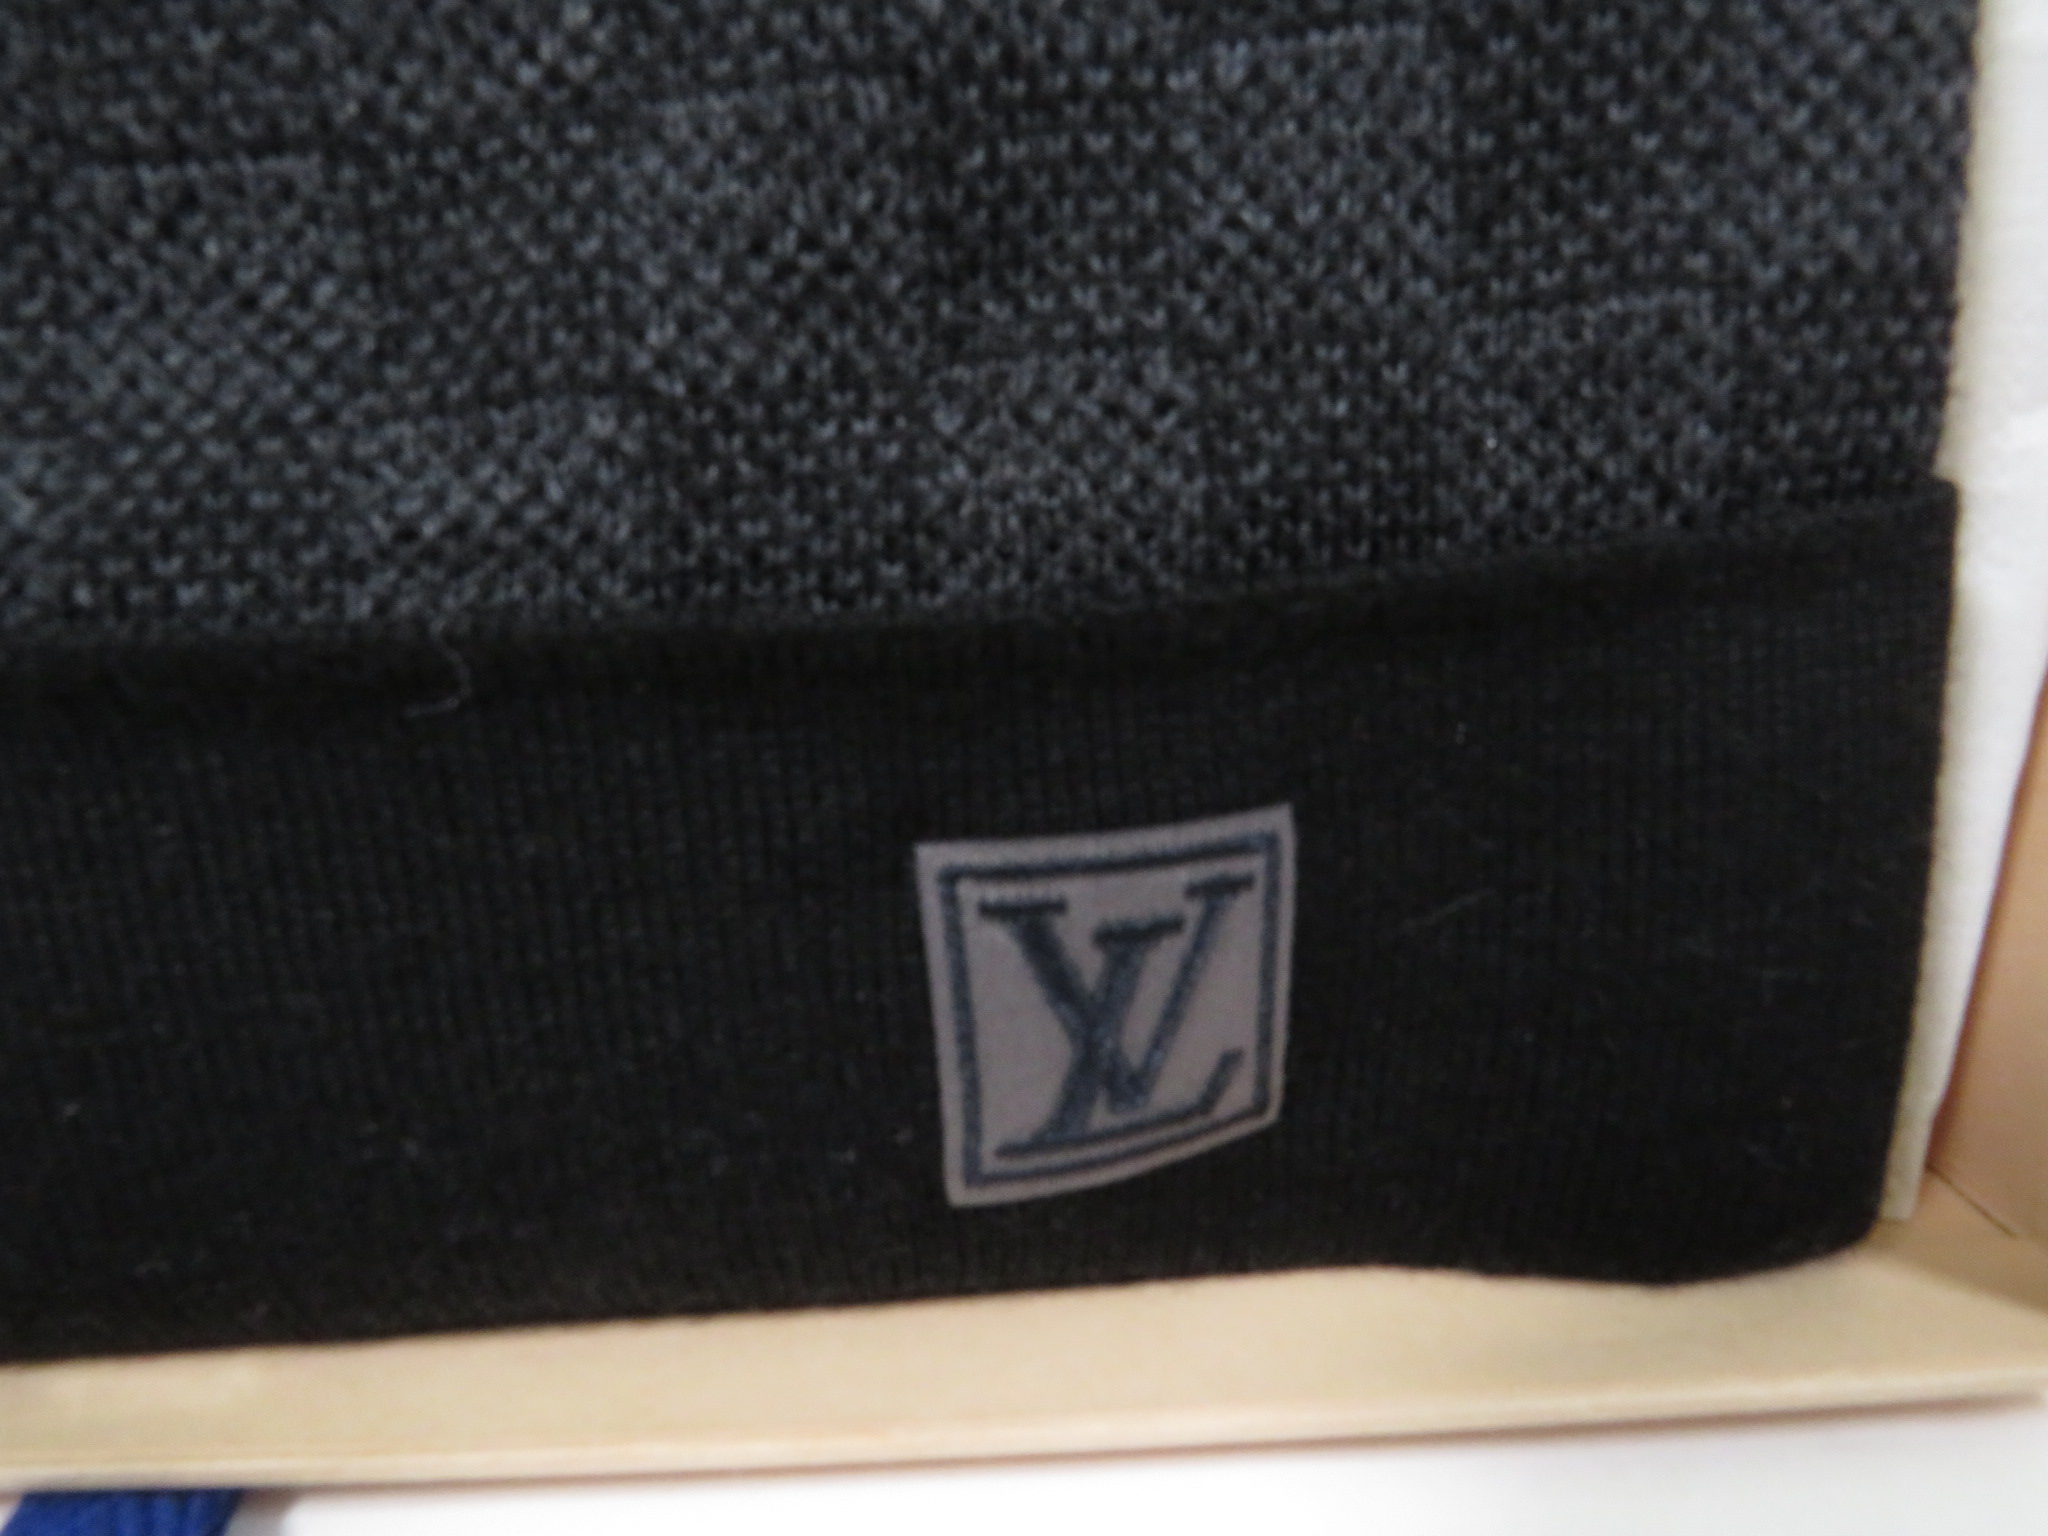 Shop Louis Vuitton Petit damier hat (M70930, M70009, M70011, M70606) by  Garcian's